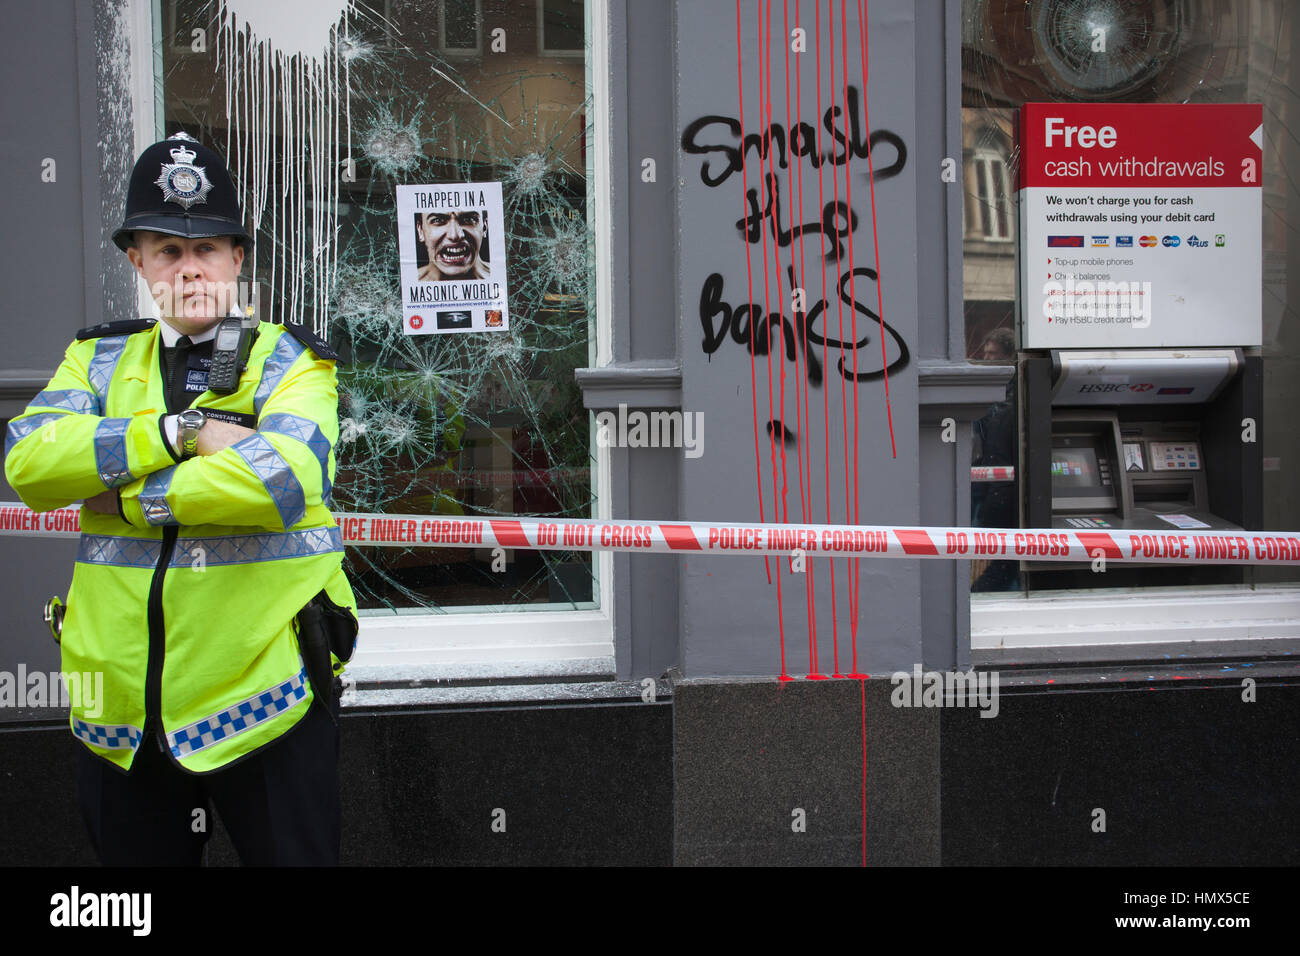 Metropolitan Police de service durant une manifestation anti-coupures dans le centre de Londres, Angleterre, Royaume-Uni Banque D'Images